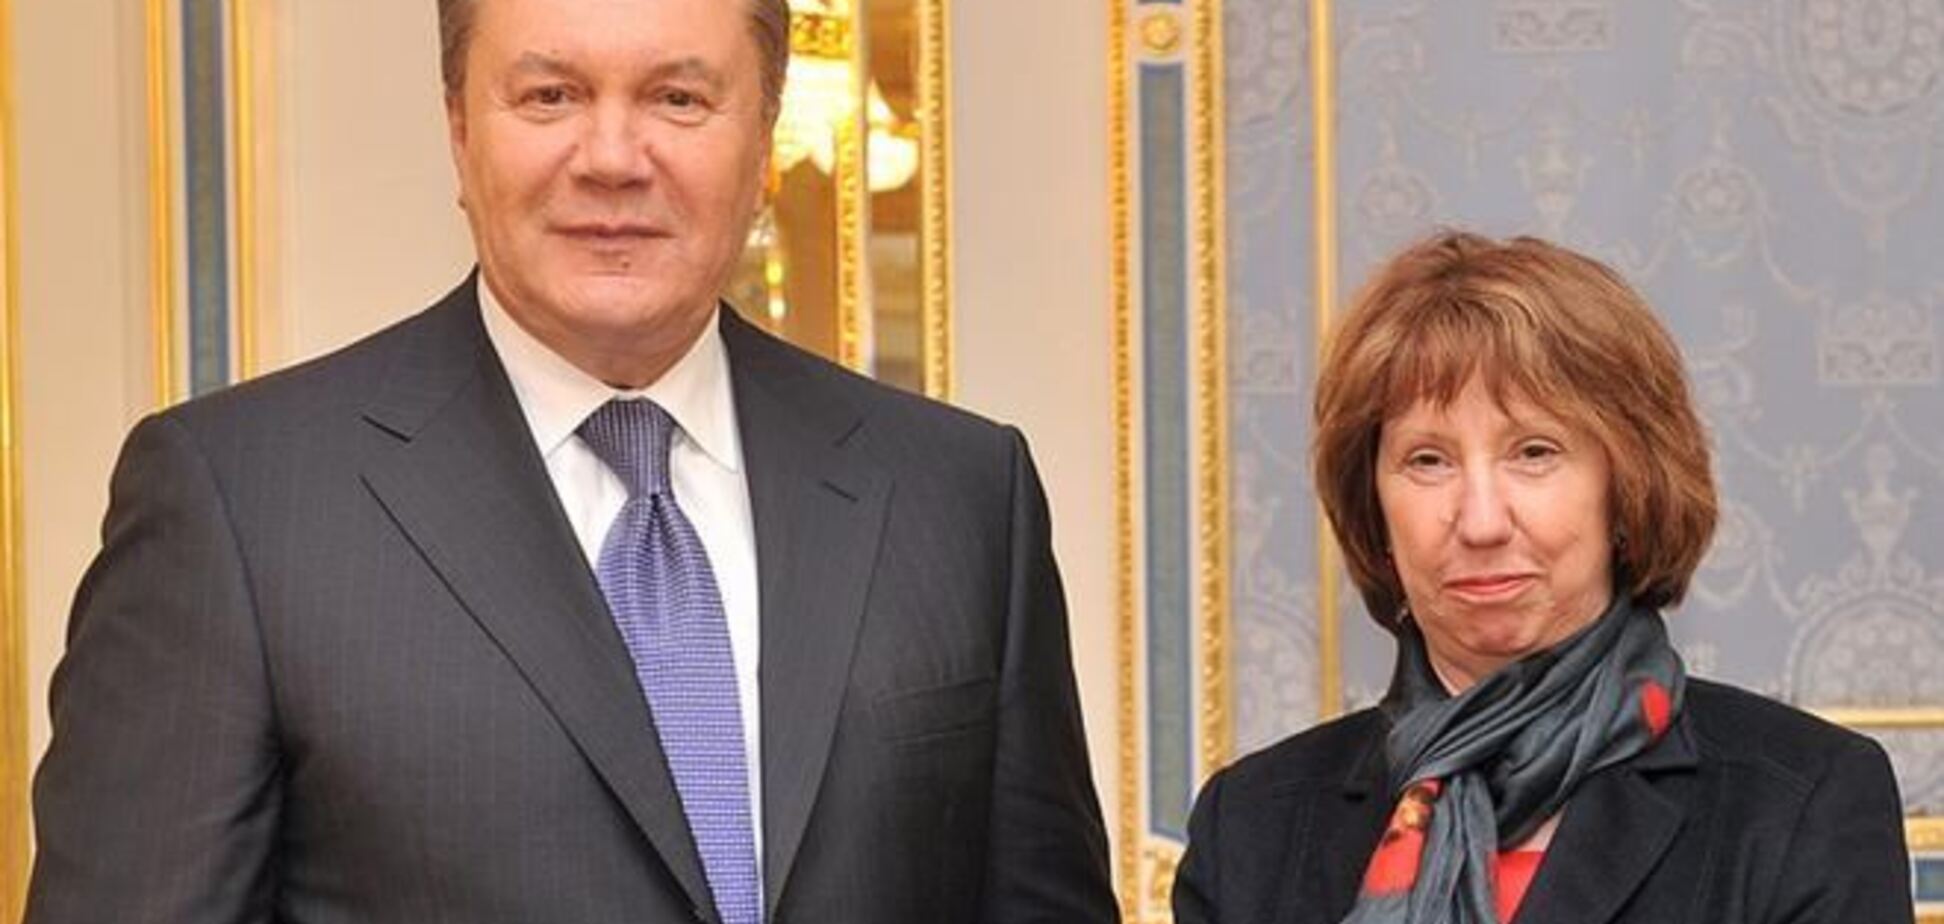 Прес-секретар: Ештон обговорила з Януковичем всі необхідні питання